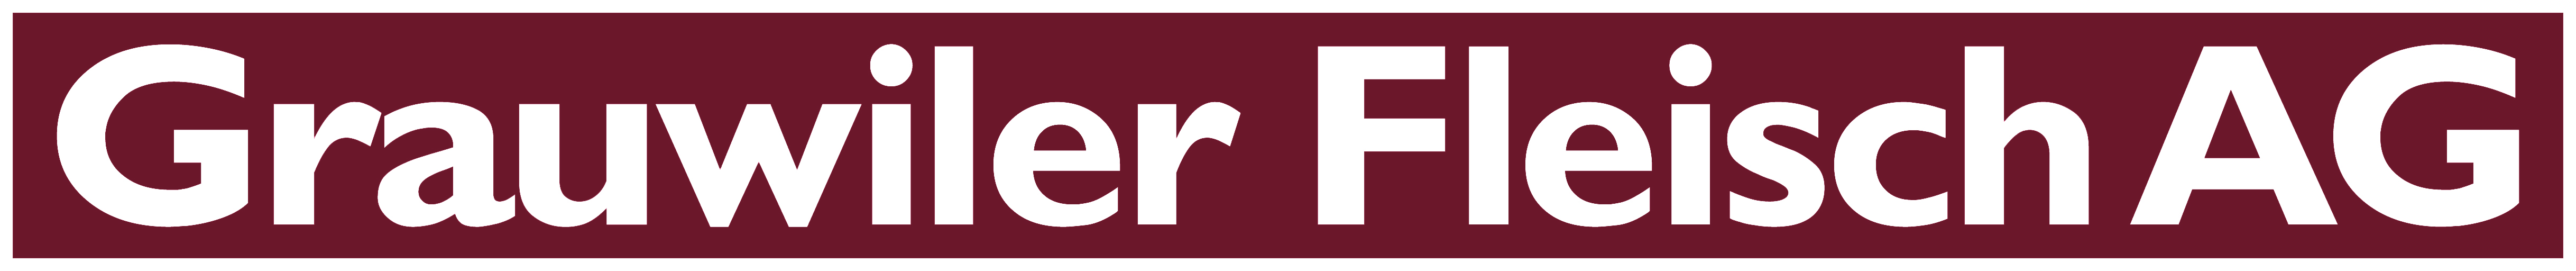 Grauwiler_logo